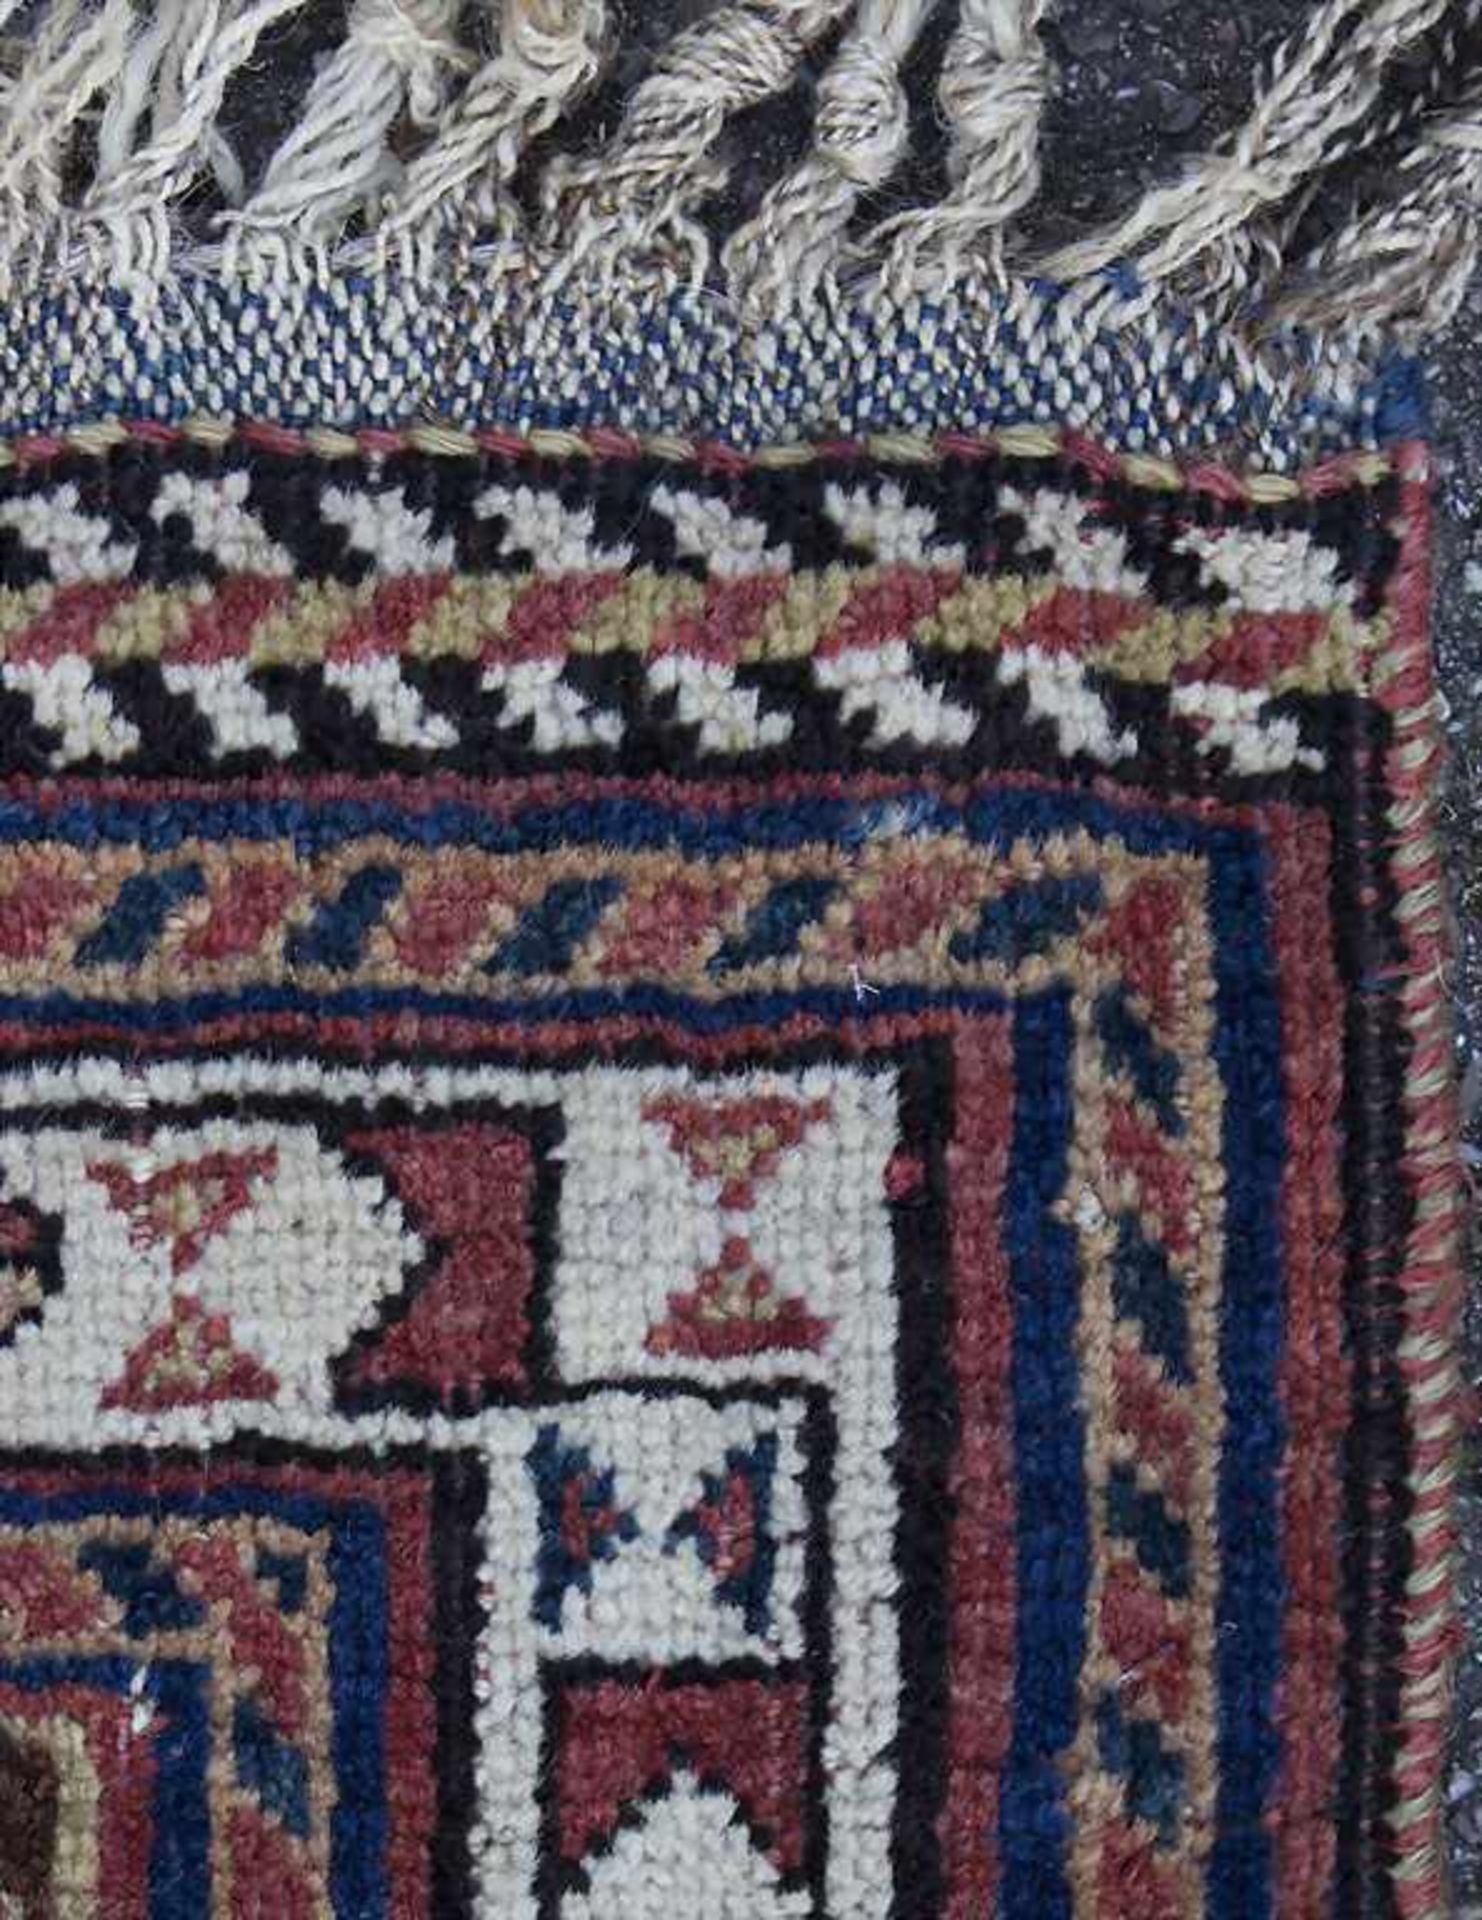 Orientteppich / An oriental carpetMaterial: Wolle auf Wolle, Maße: 238 x 145 cm, Zustand: gut, - Bild 3 aus 5